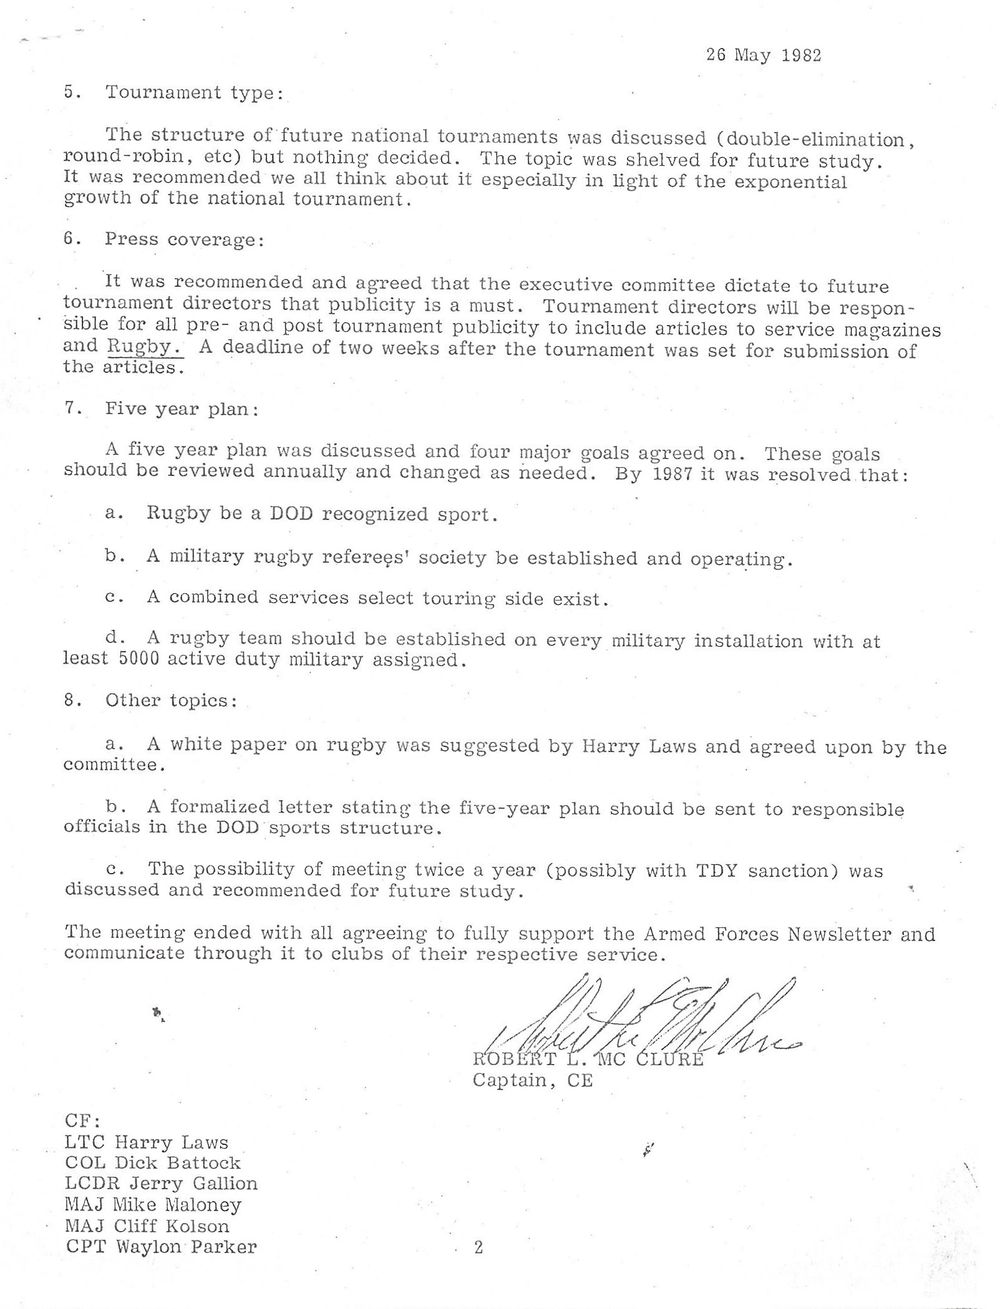 1982 05 CS Committee Minutes 2.jpg